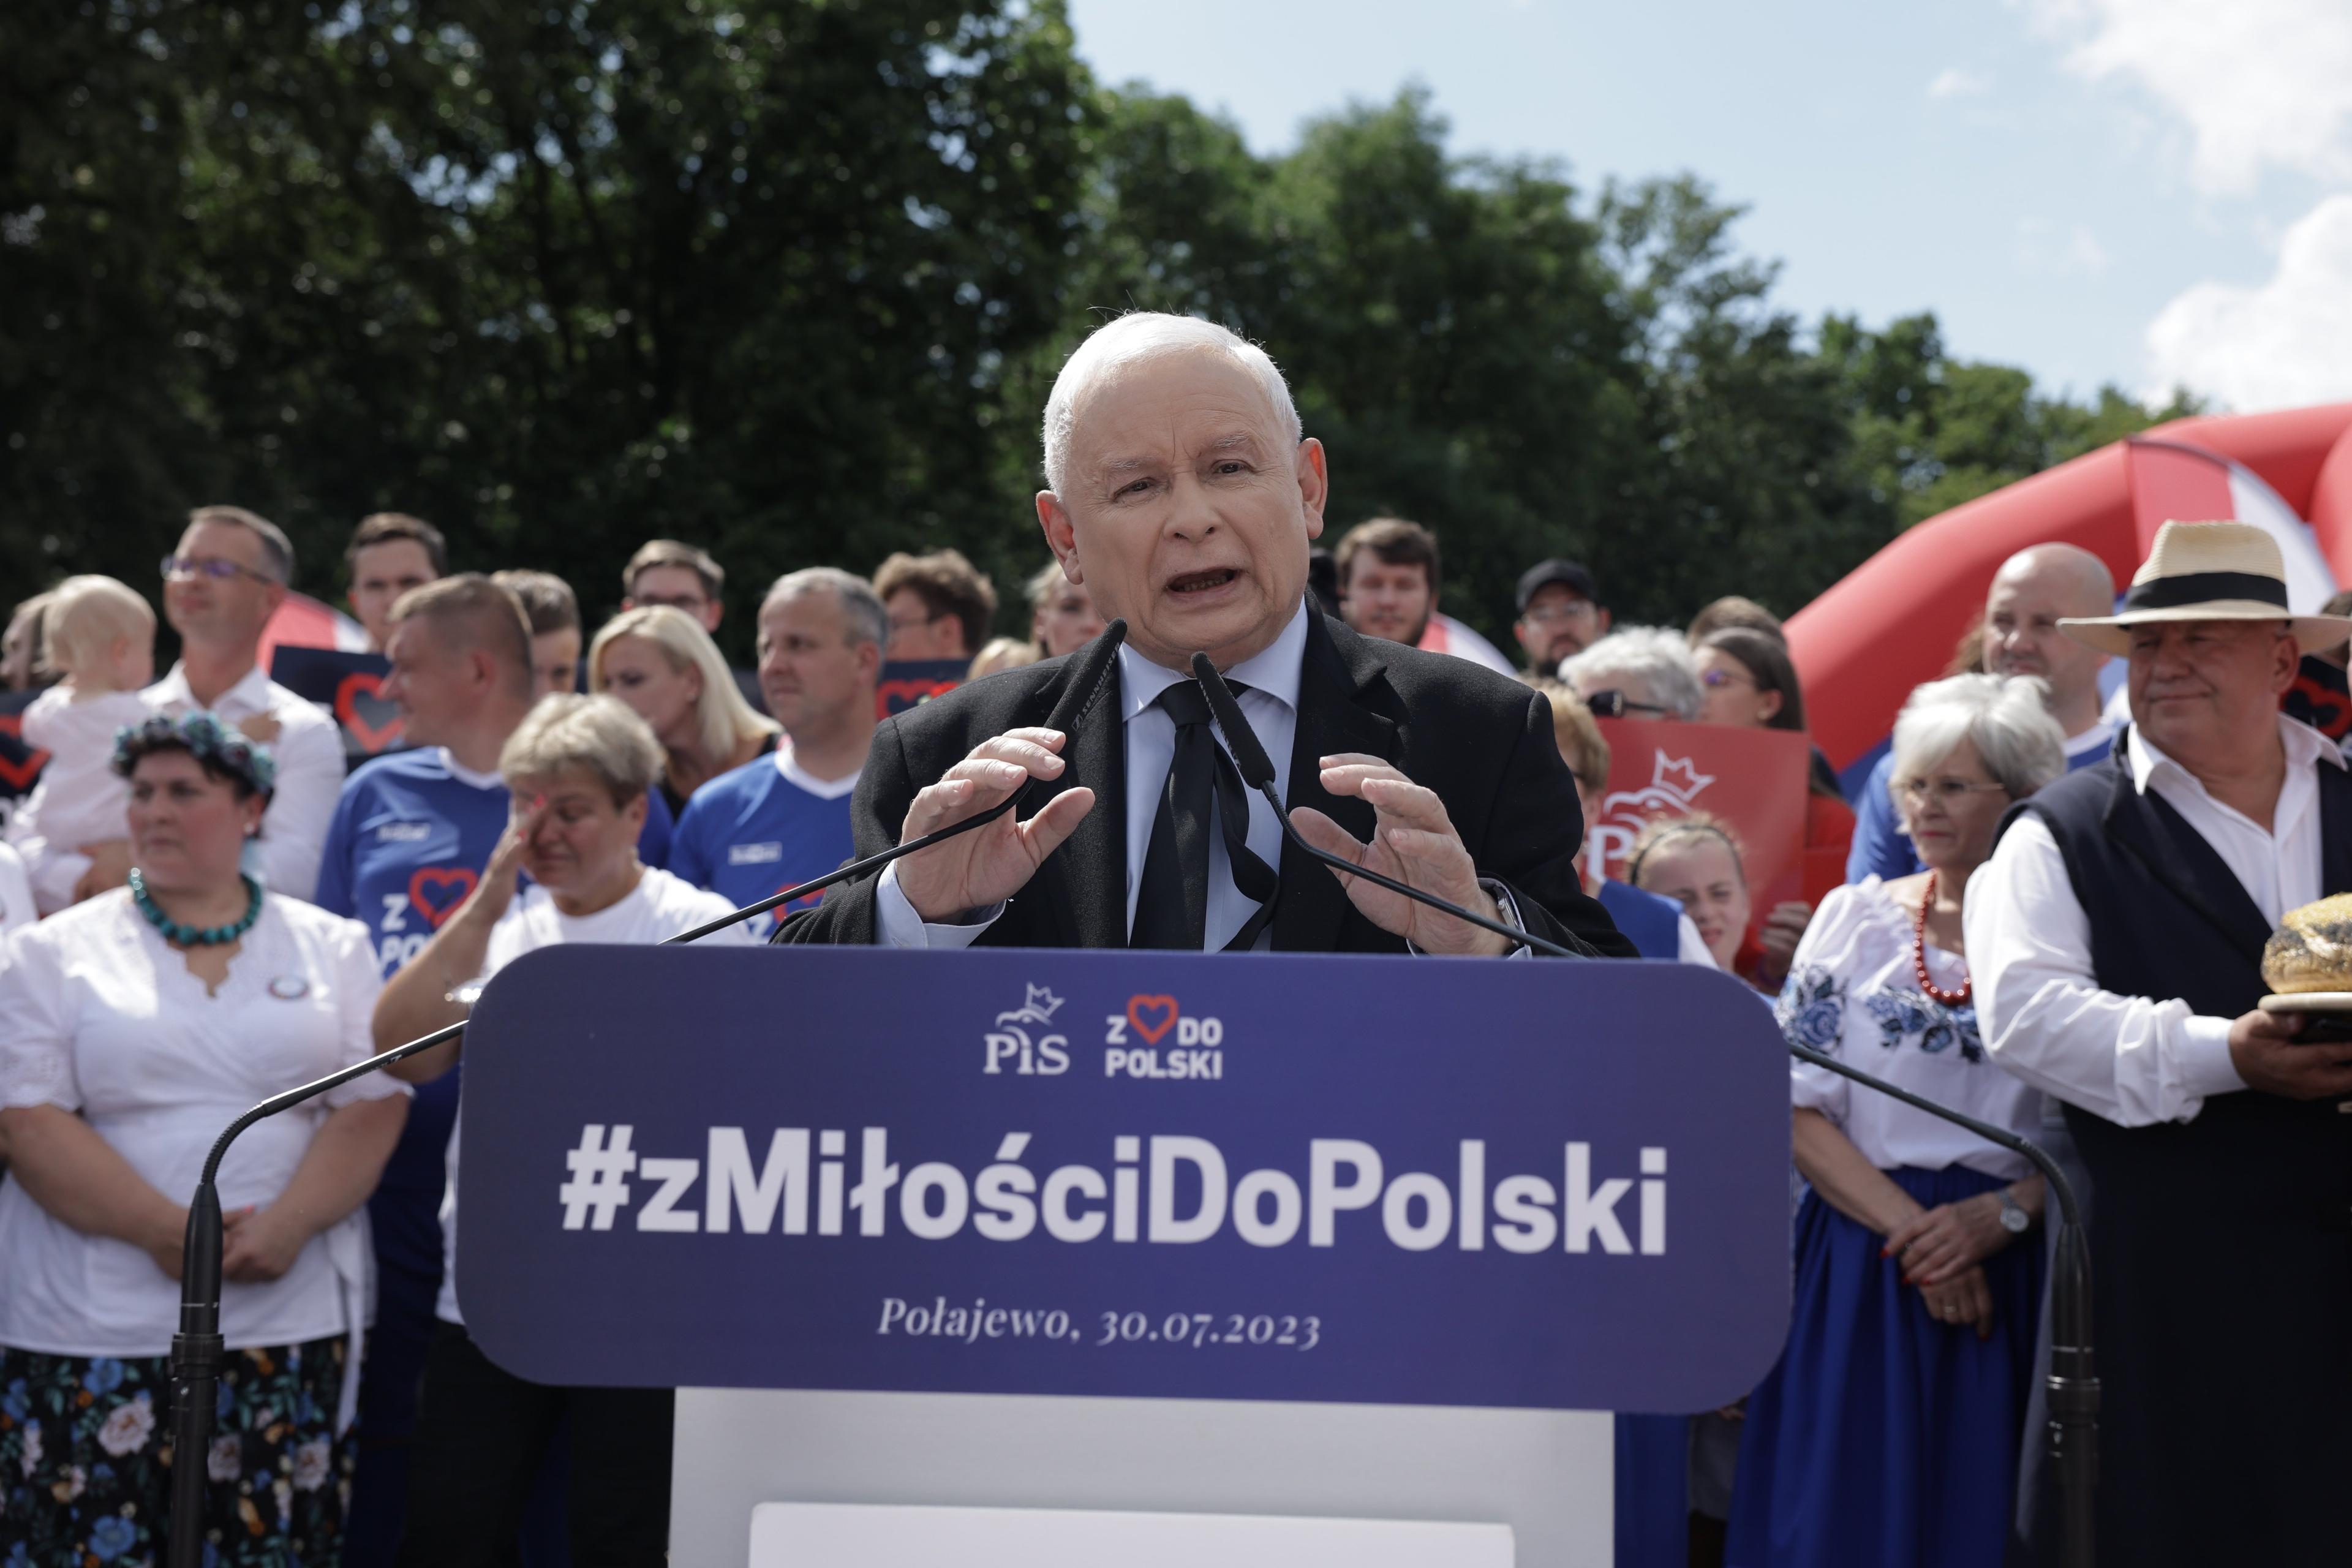 siwy mężczyzna przemawia na tle drzew i zebranych na spotkaniu ludzi, stoi przed pulpitem z napisem z Miłości do Polski